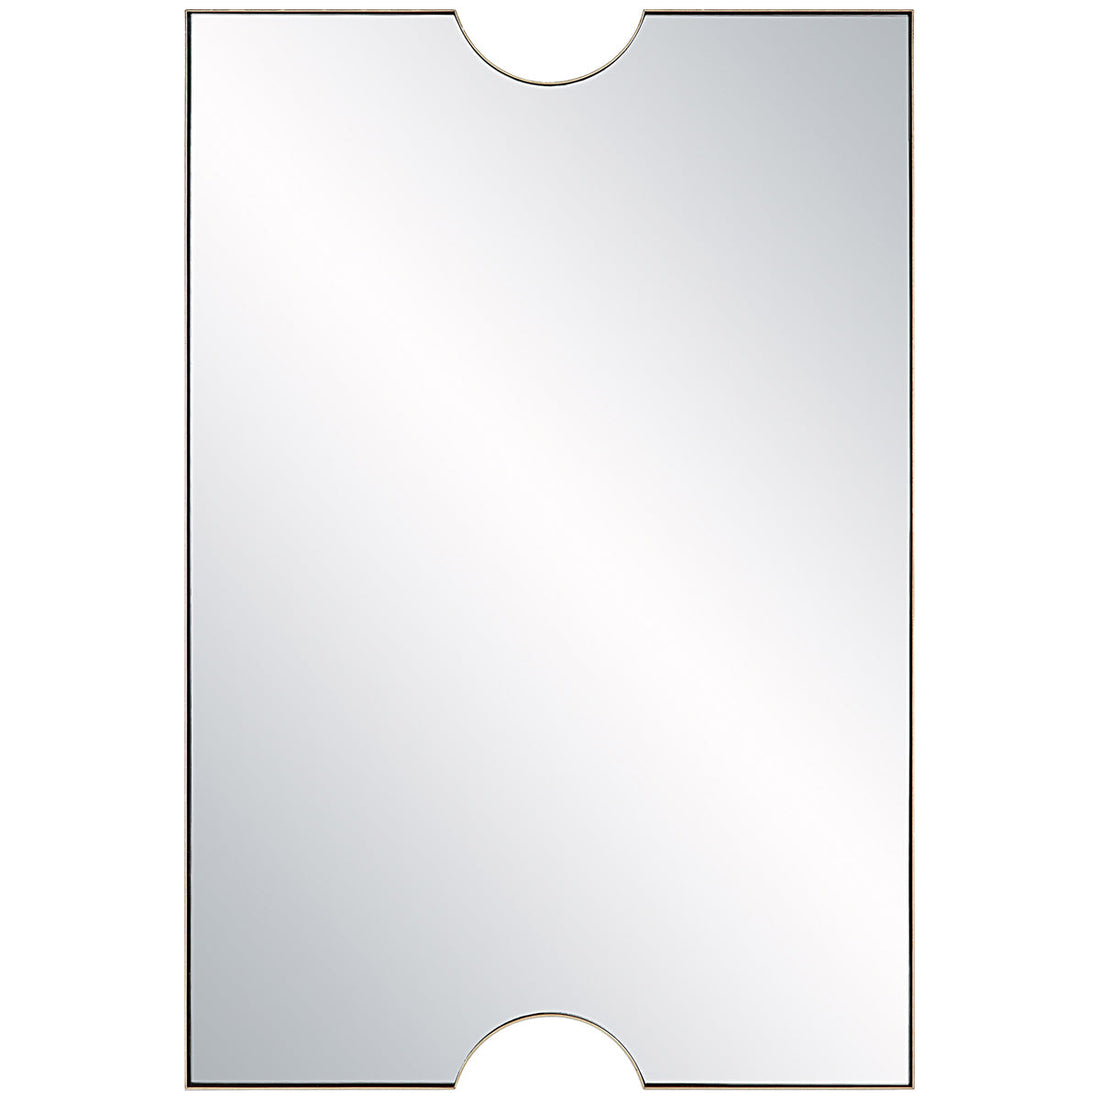 Uttermost Ticket Gold Vanity Mirror